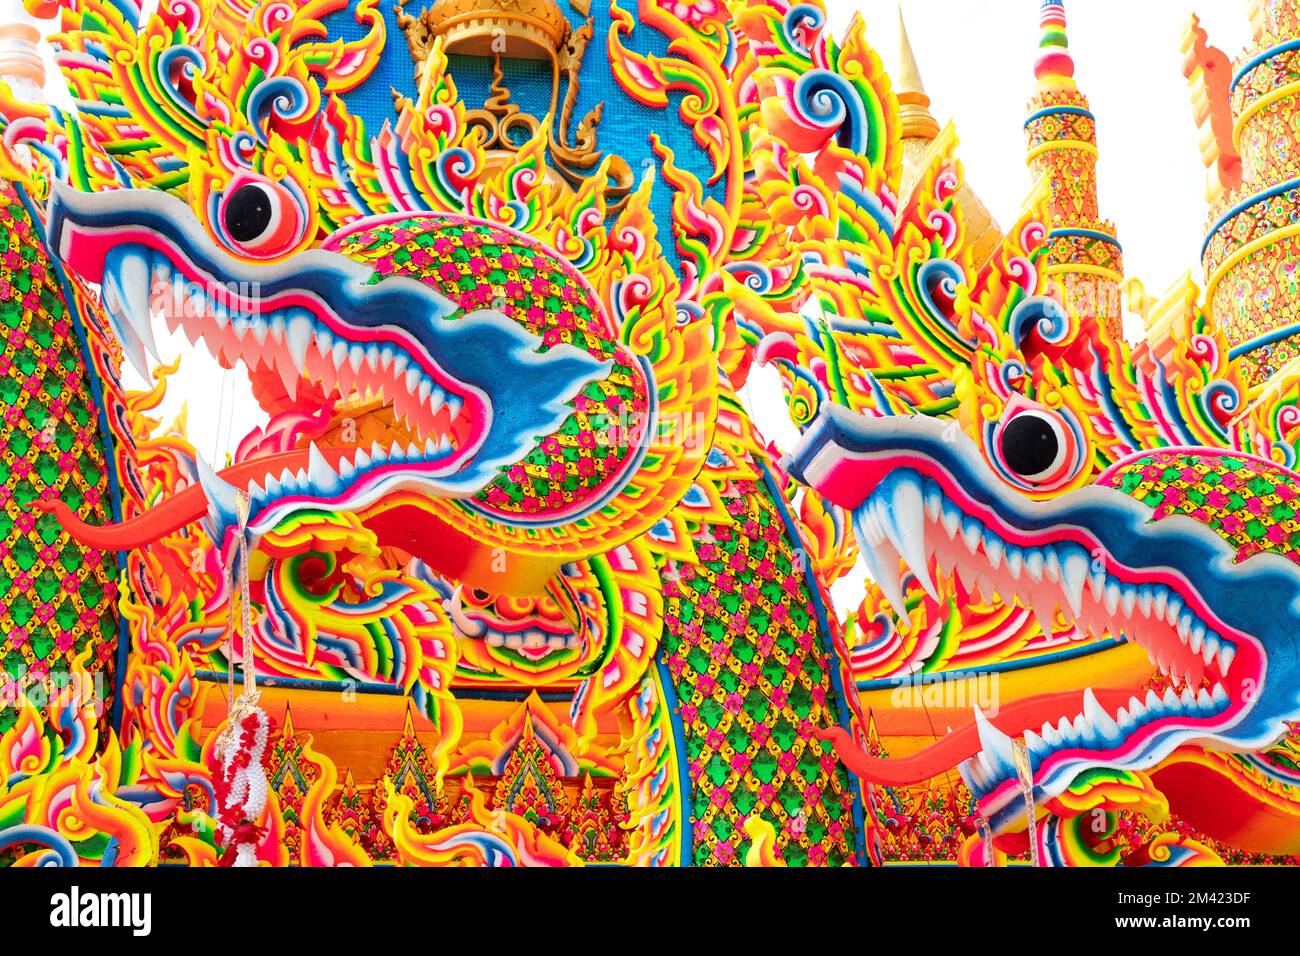 Das jährliche Orange Parade Festival oder Chak Phra Festival, das im Herbst in Südthailand stattfindet, ist ein wunderschön dekorierter Bootswettbewerb Stockfoto